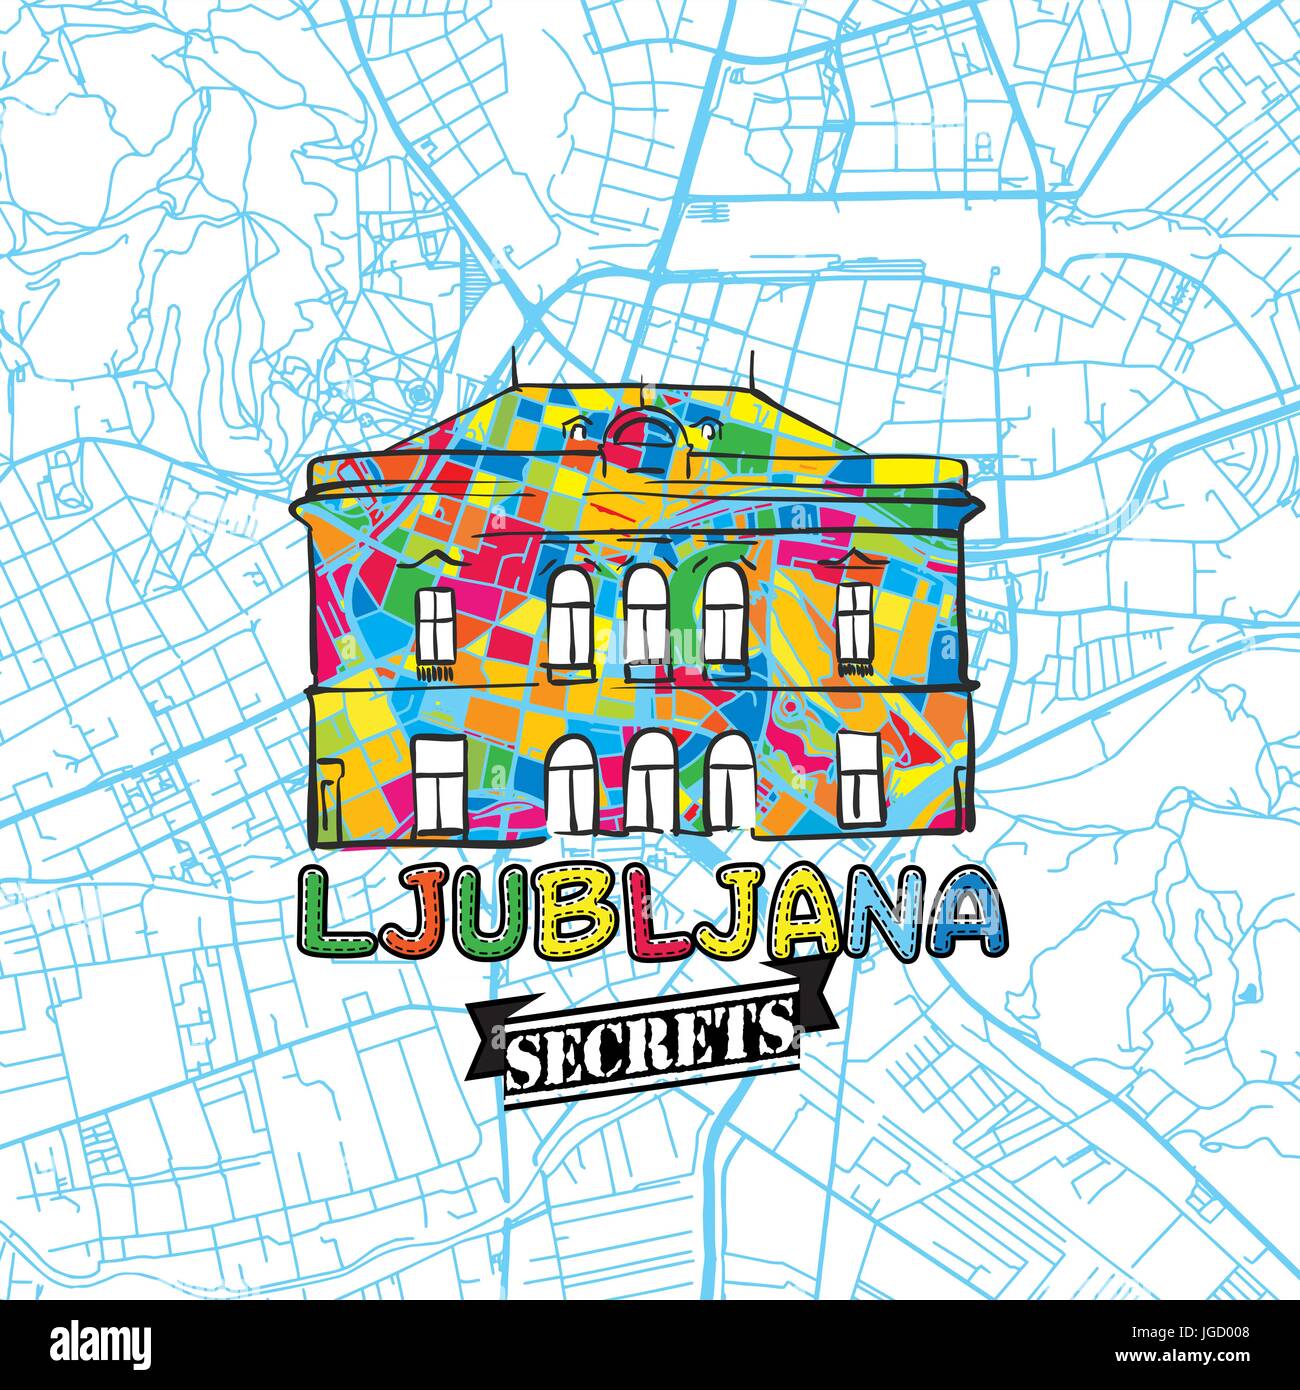 Ljubljana Reisen Geheimnisse Art Map für die Zuordnung von Experten und Reiseführer. Handgemachte Stadt Logo, Typo-Abzeichen und Hand gezeichnete Vektorbild auf Top sind gruppiert Stock Vektor